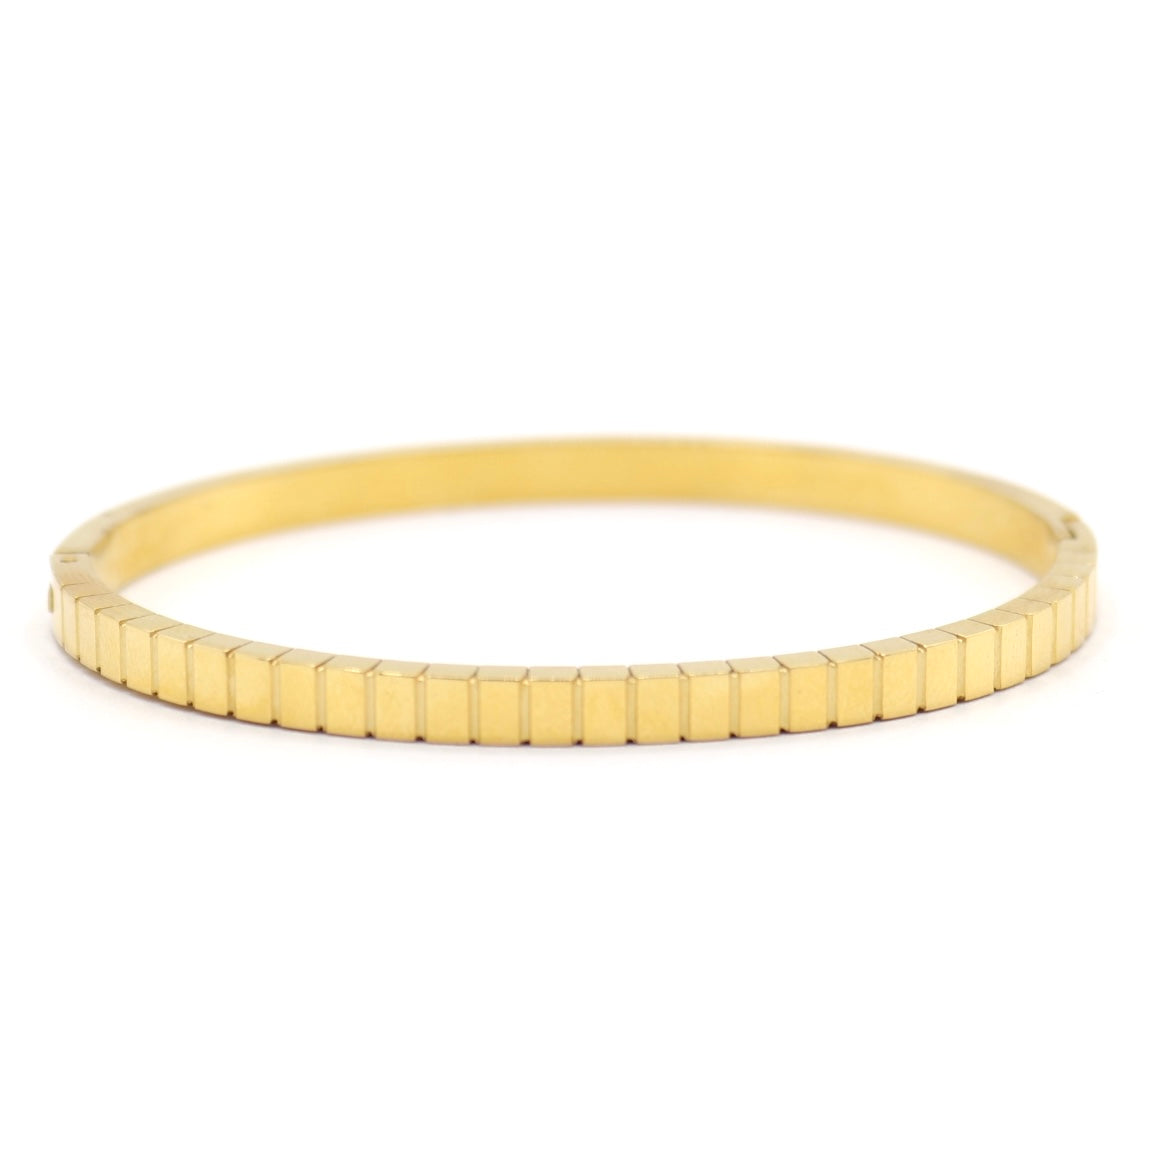 Remy Gold Bangle Bracelet